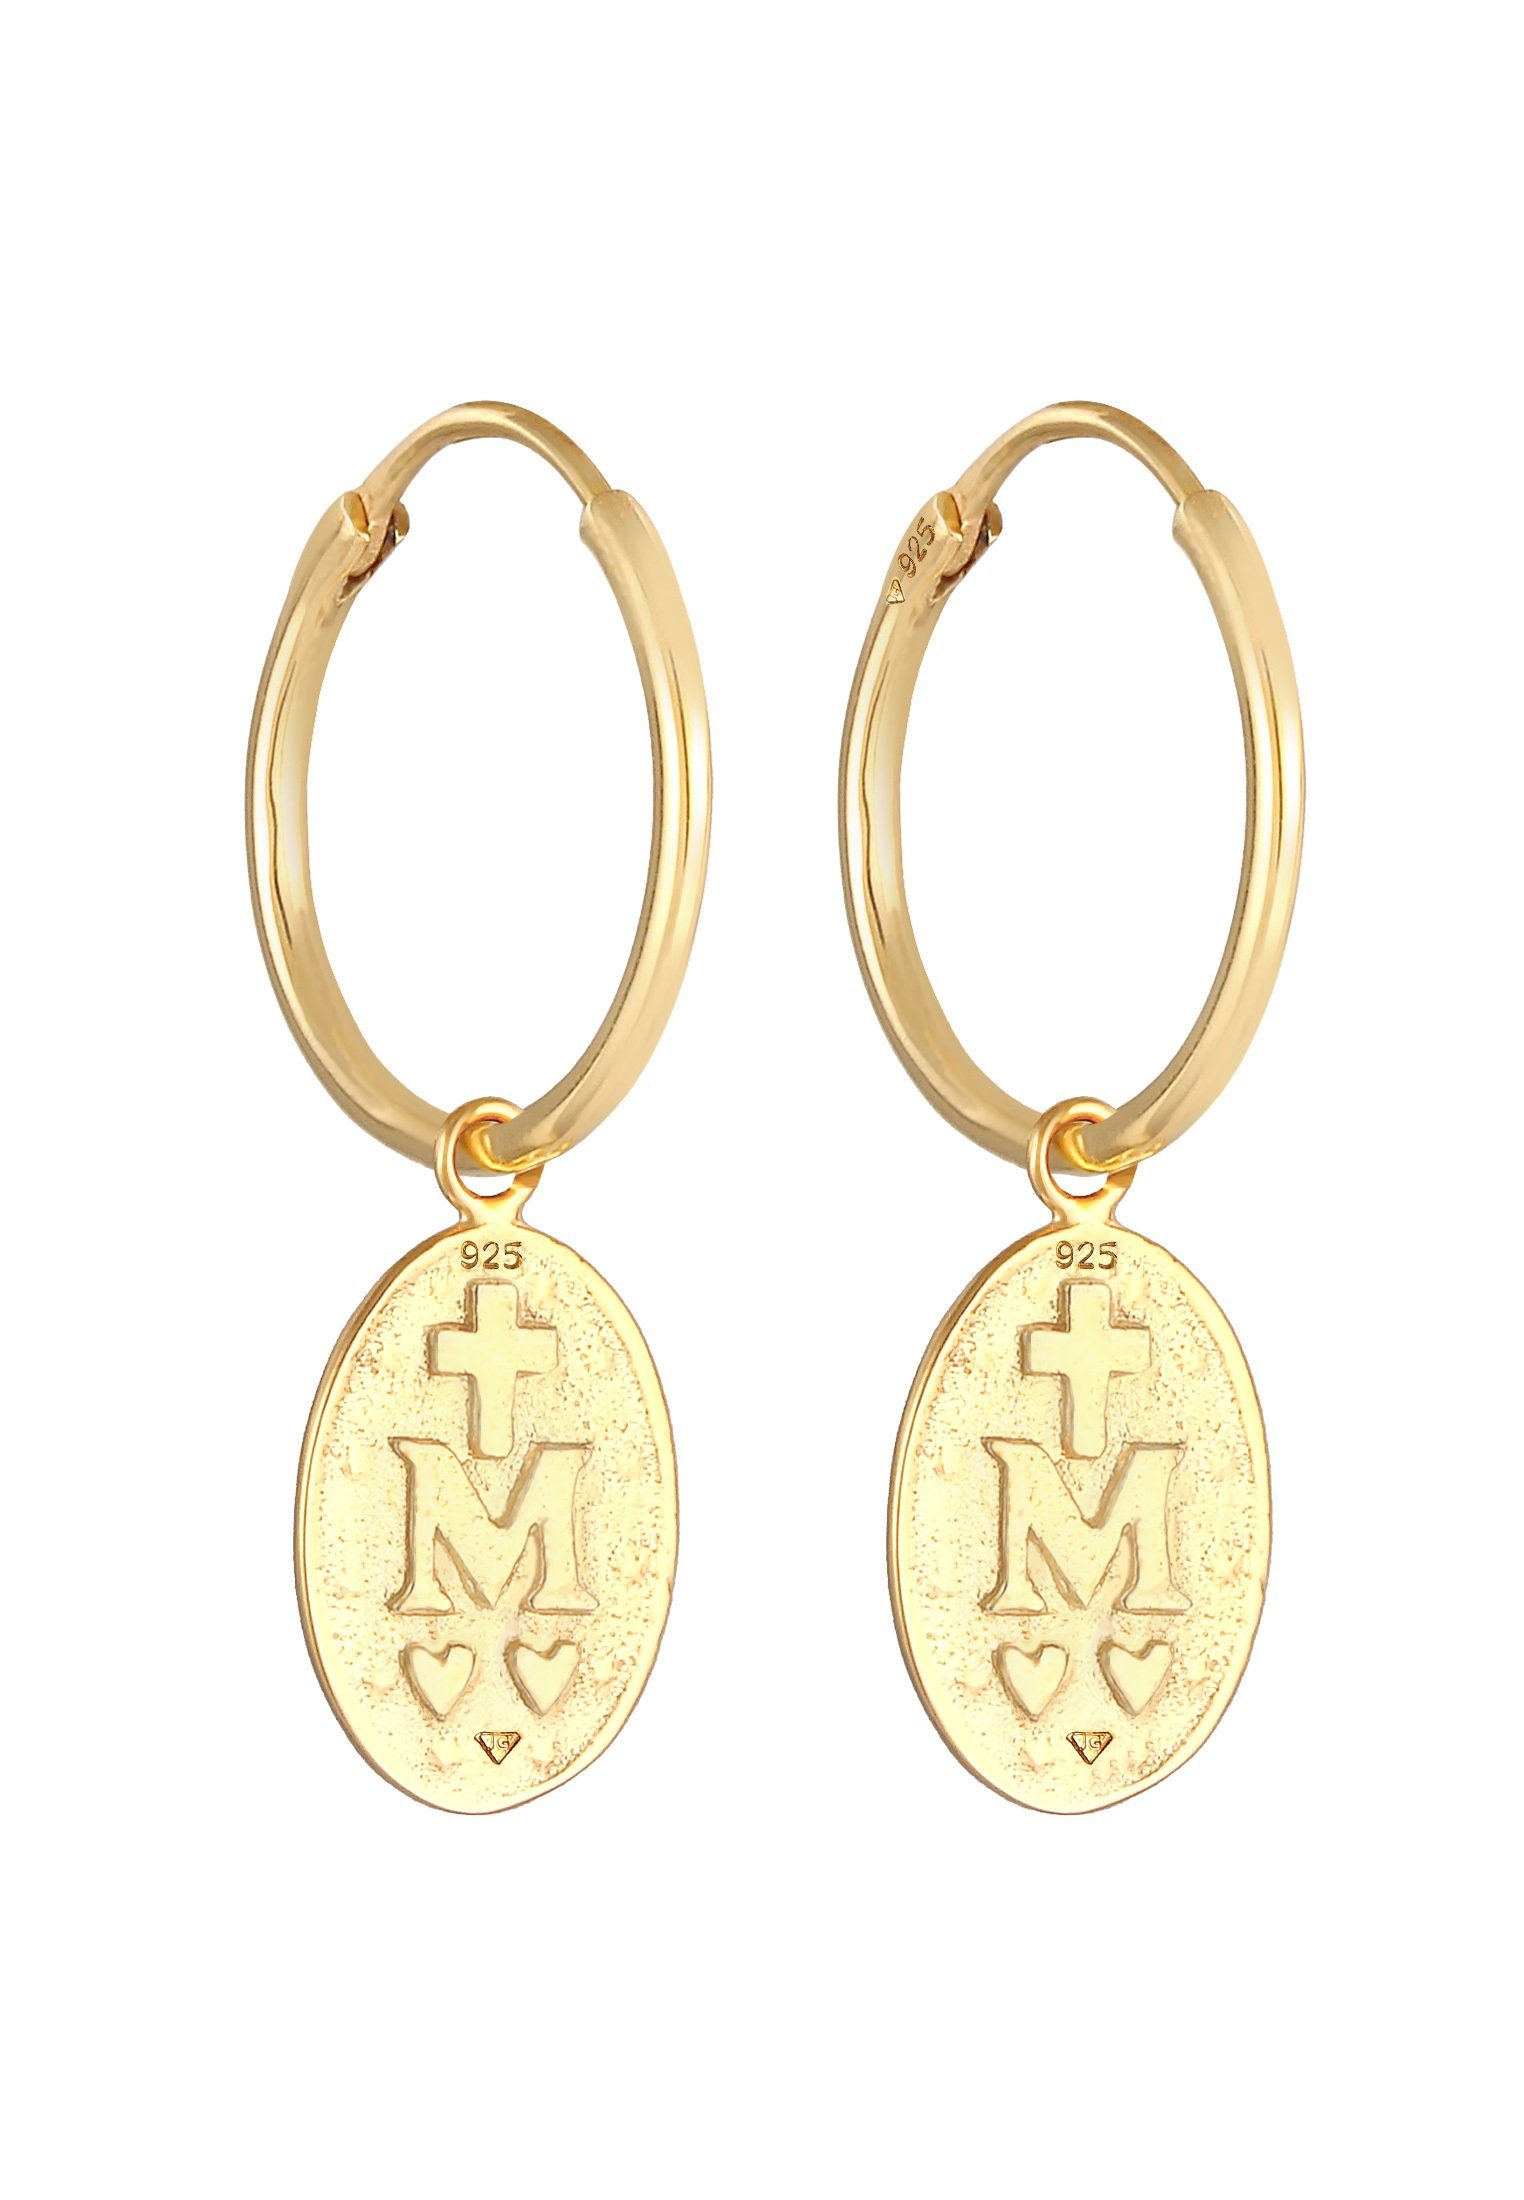 Einhänger Ohrhänger Marienbild Marienbild Münze Paar Creolen Elli 925 Gold Silber,